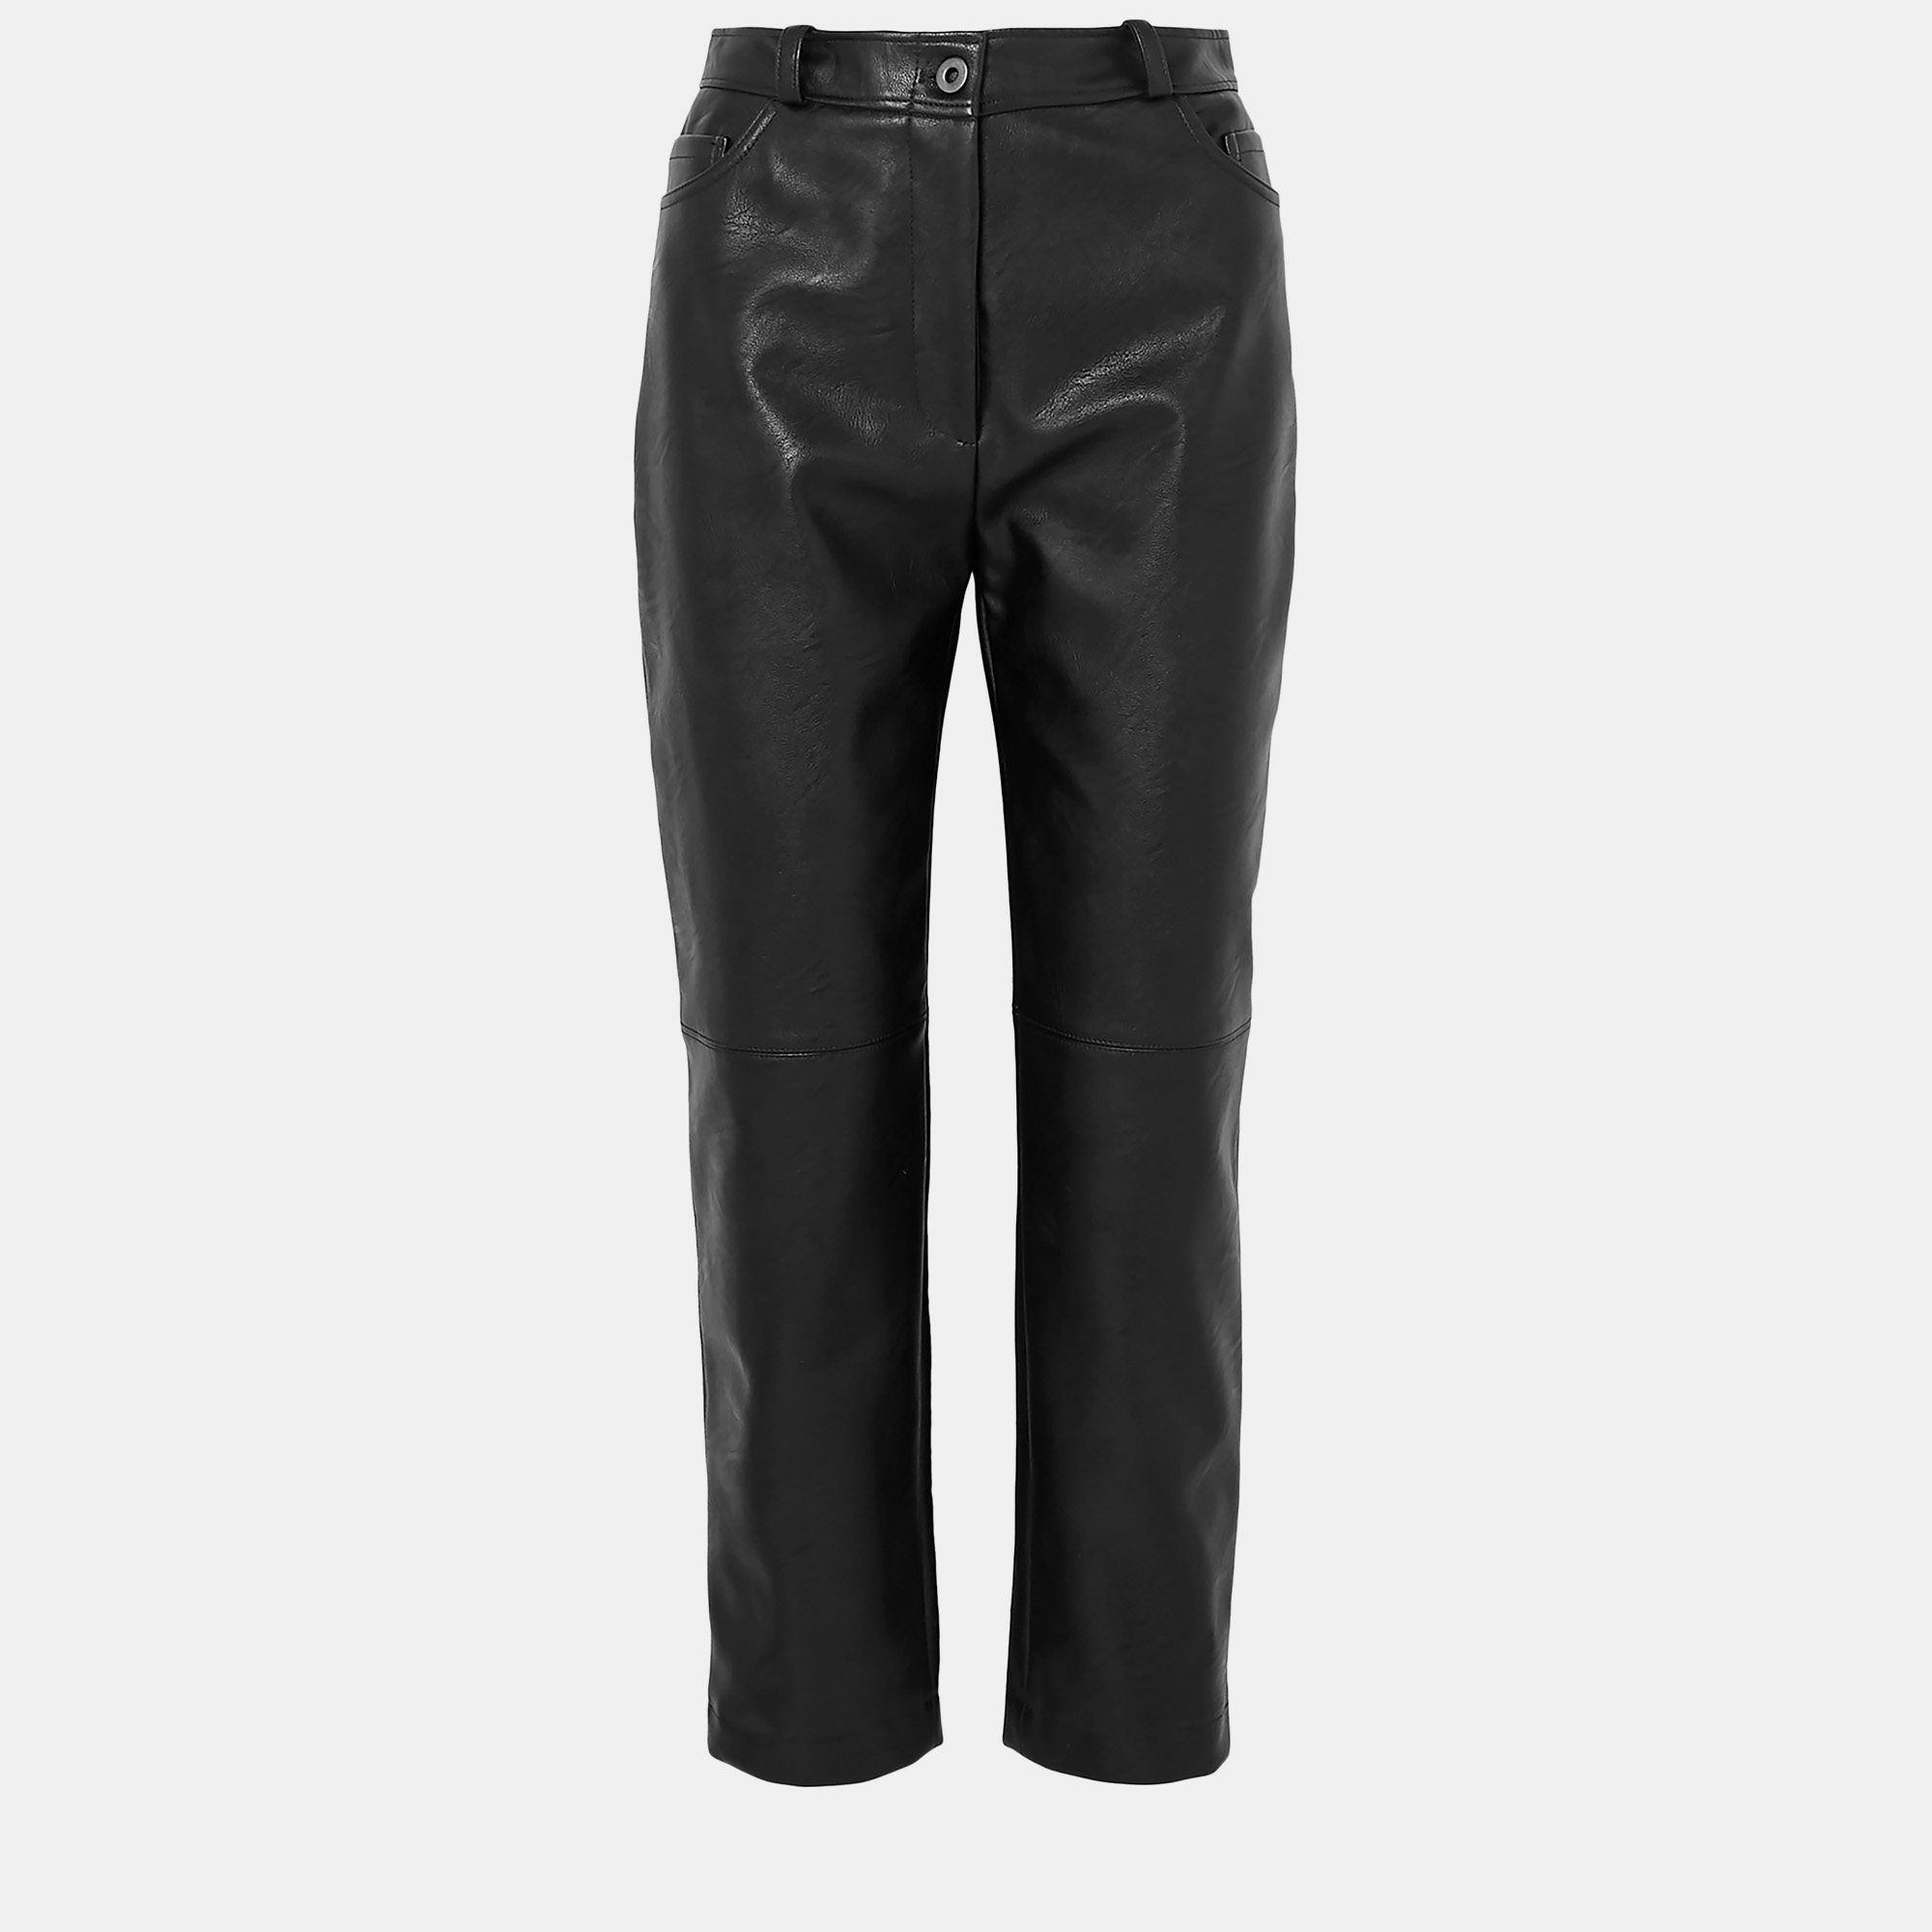 Stella mccartney black faux-leather pants xl (it 46)